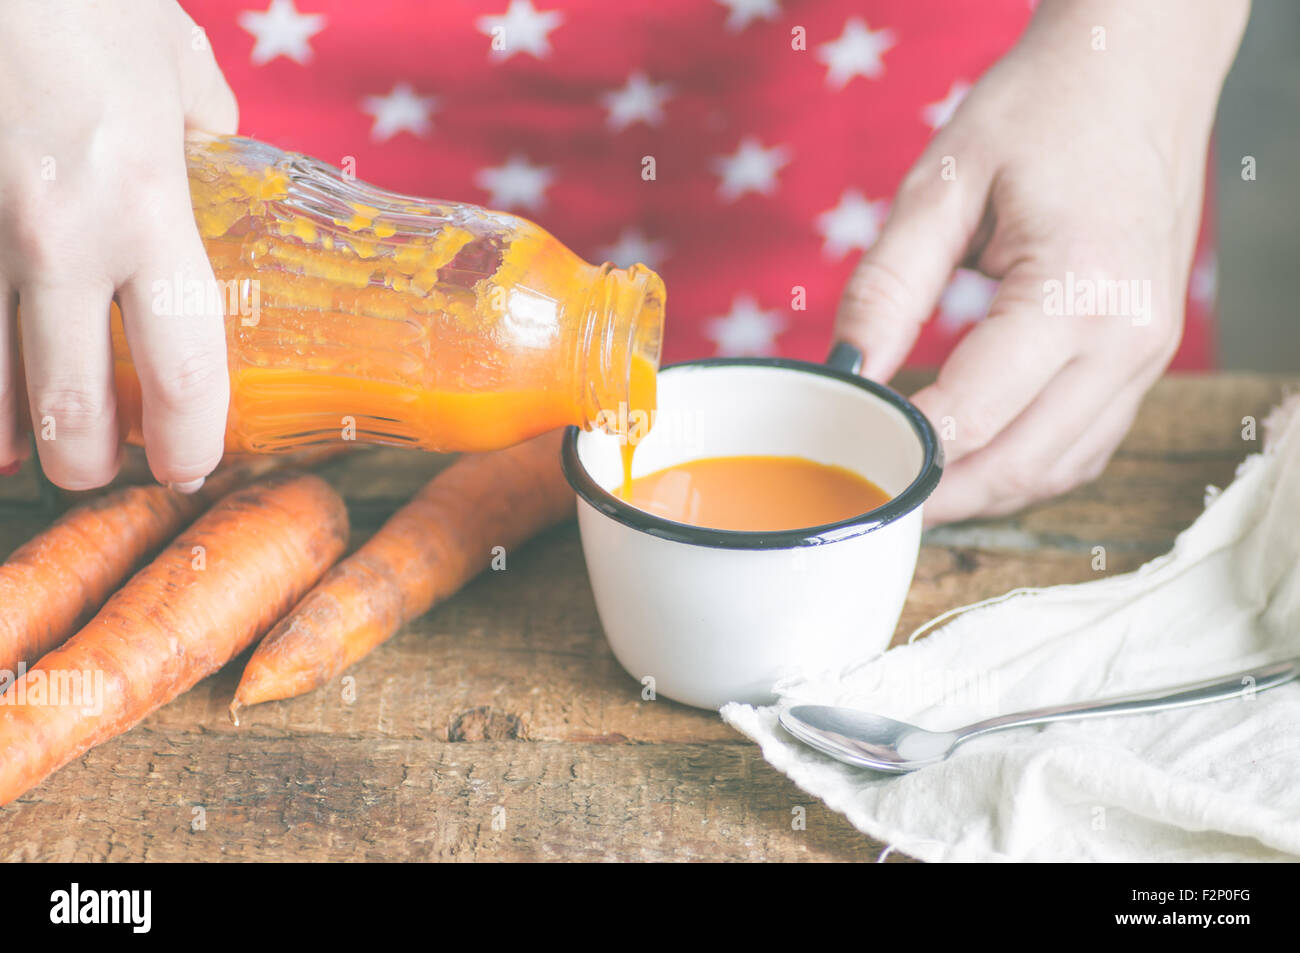 La femme verse une bouteille de jus de carotte dans une tasse Banque D'Images